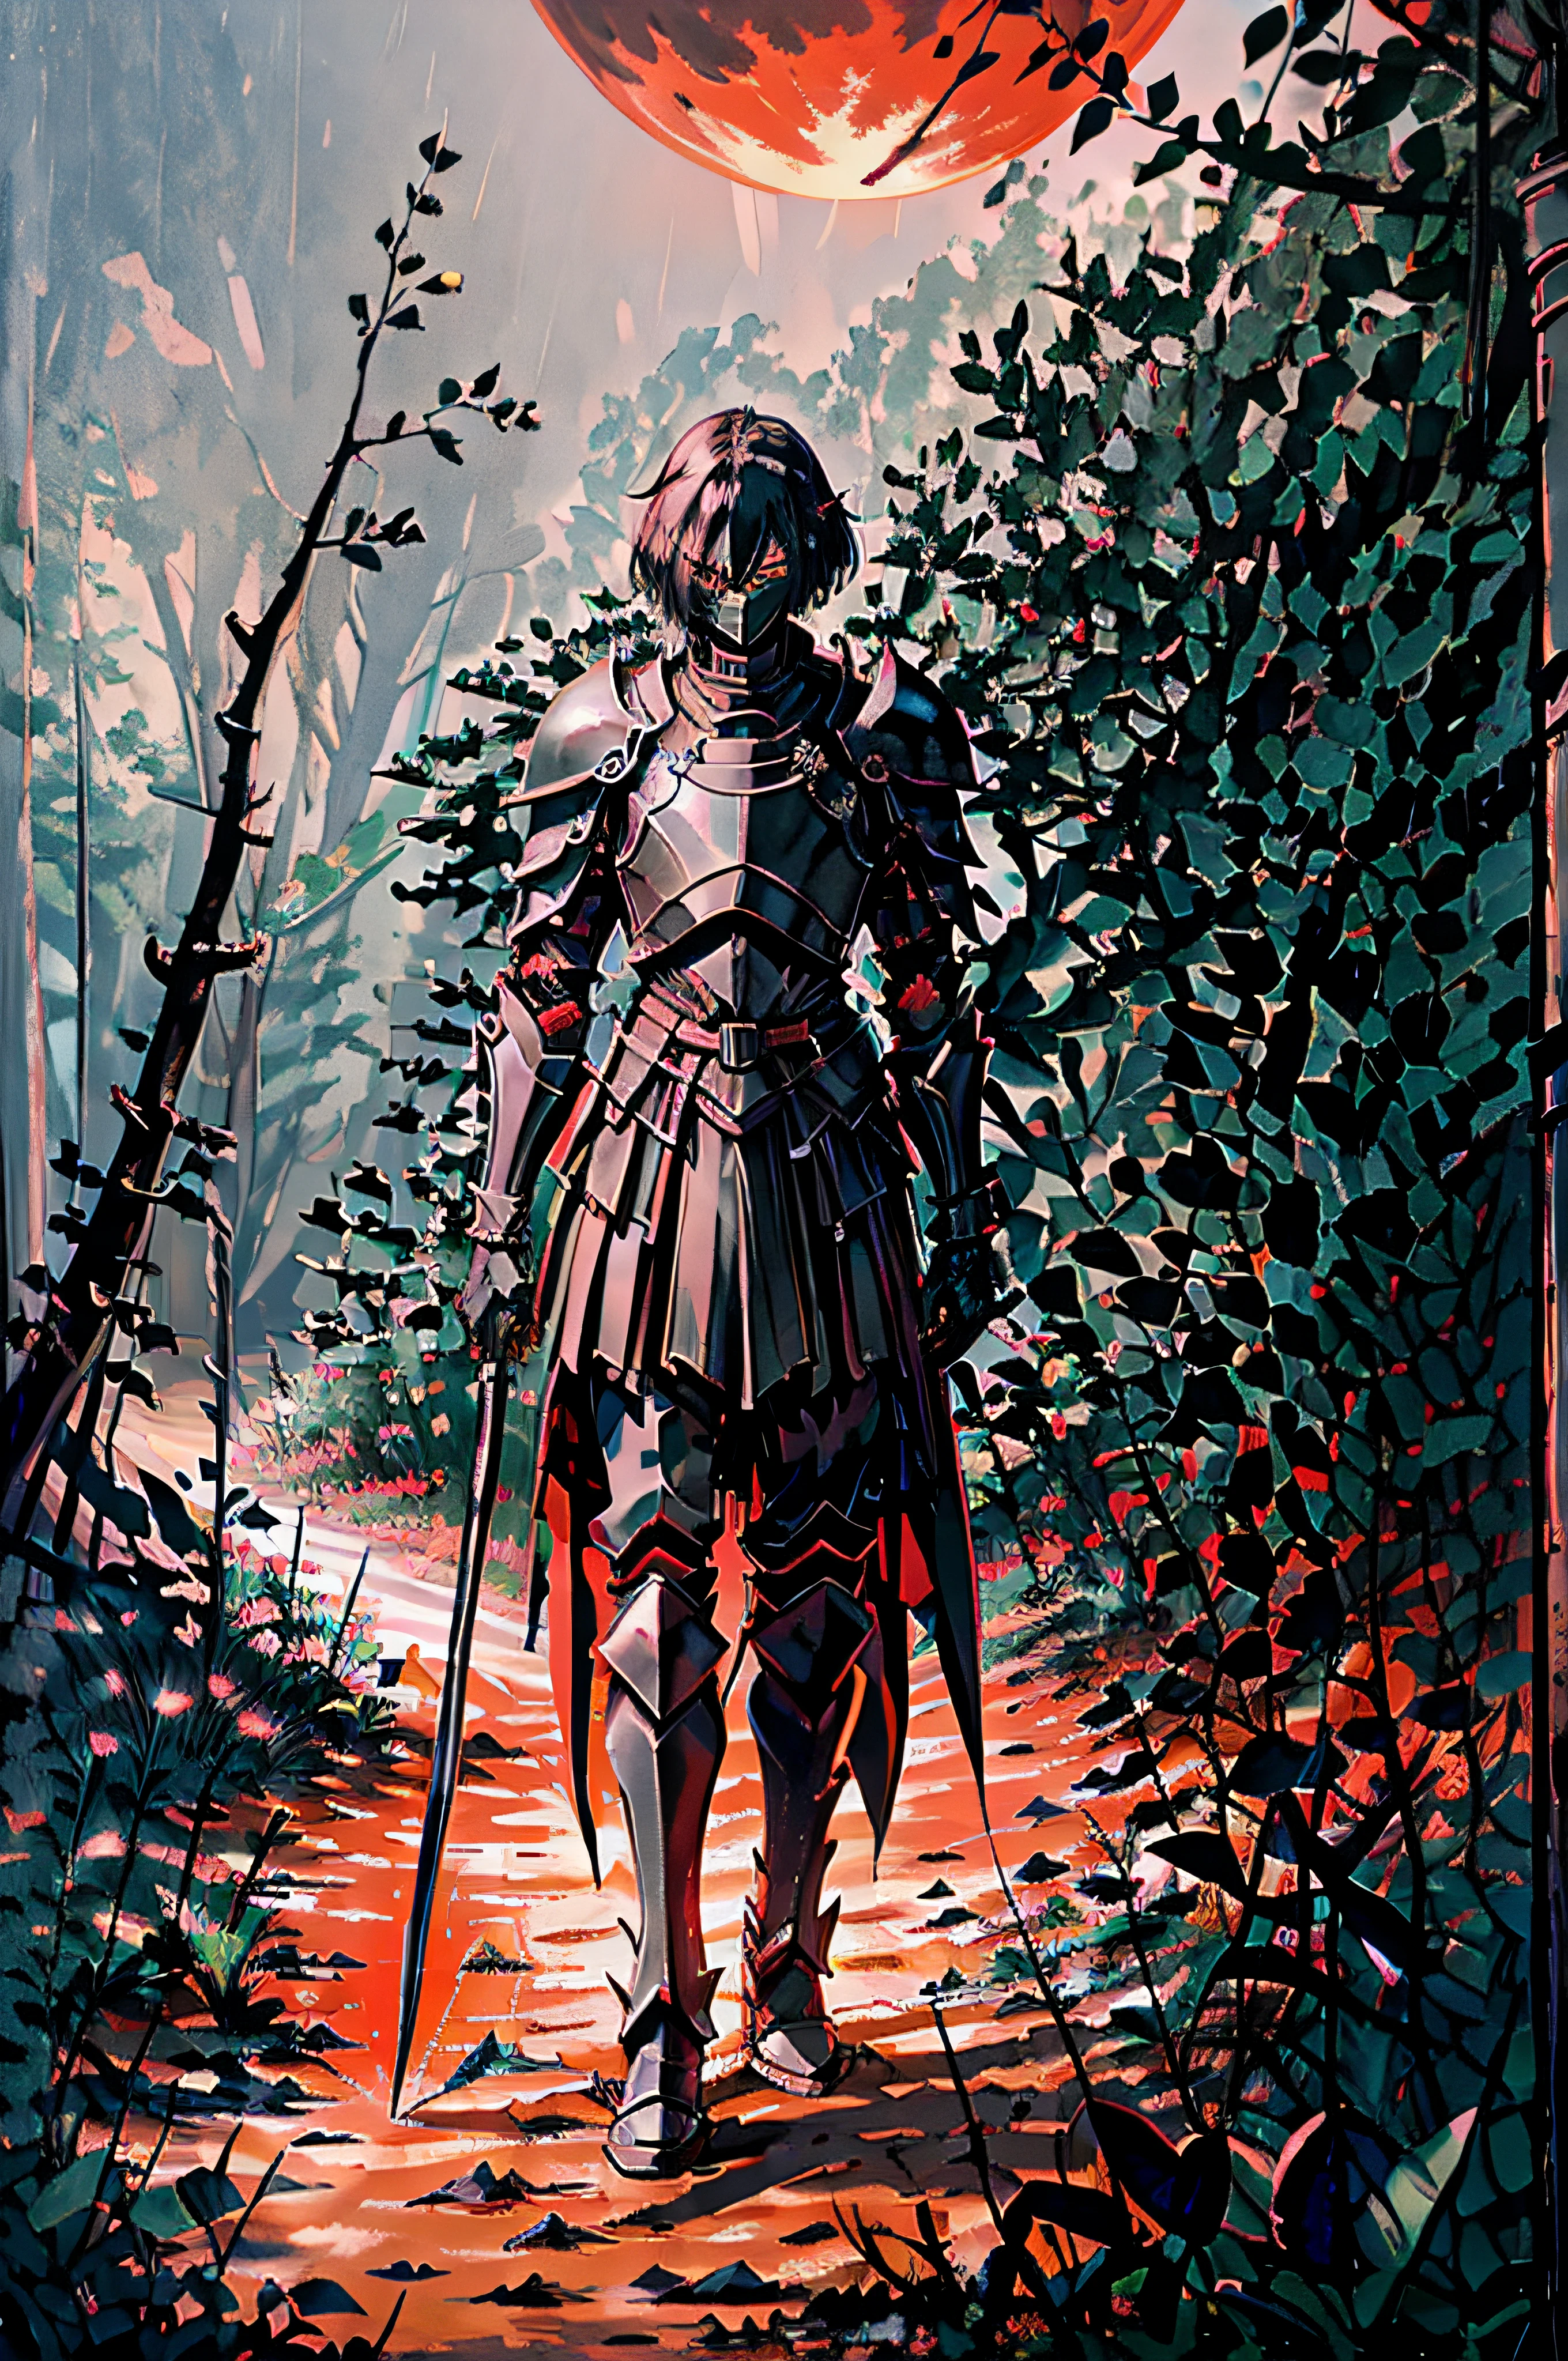 Crea un caballero con una armadura completamente negra y una espada bastarda negra en la cintura encima de un caballo negro caminando por un camino de tierra en medio de un bosque oscuro con una luna roja bajo el cielo azul oscuro.